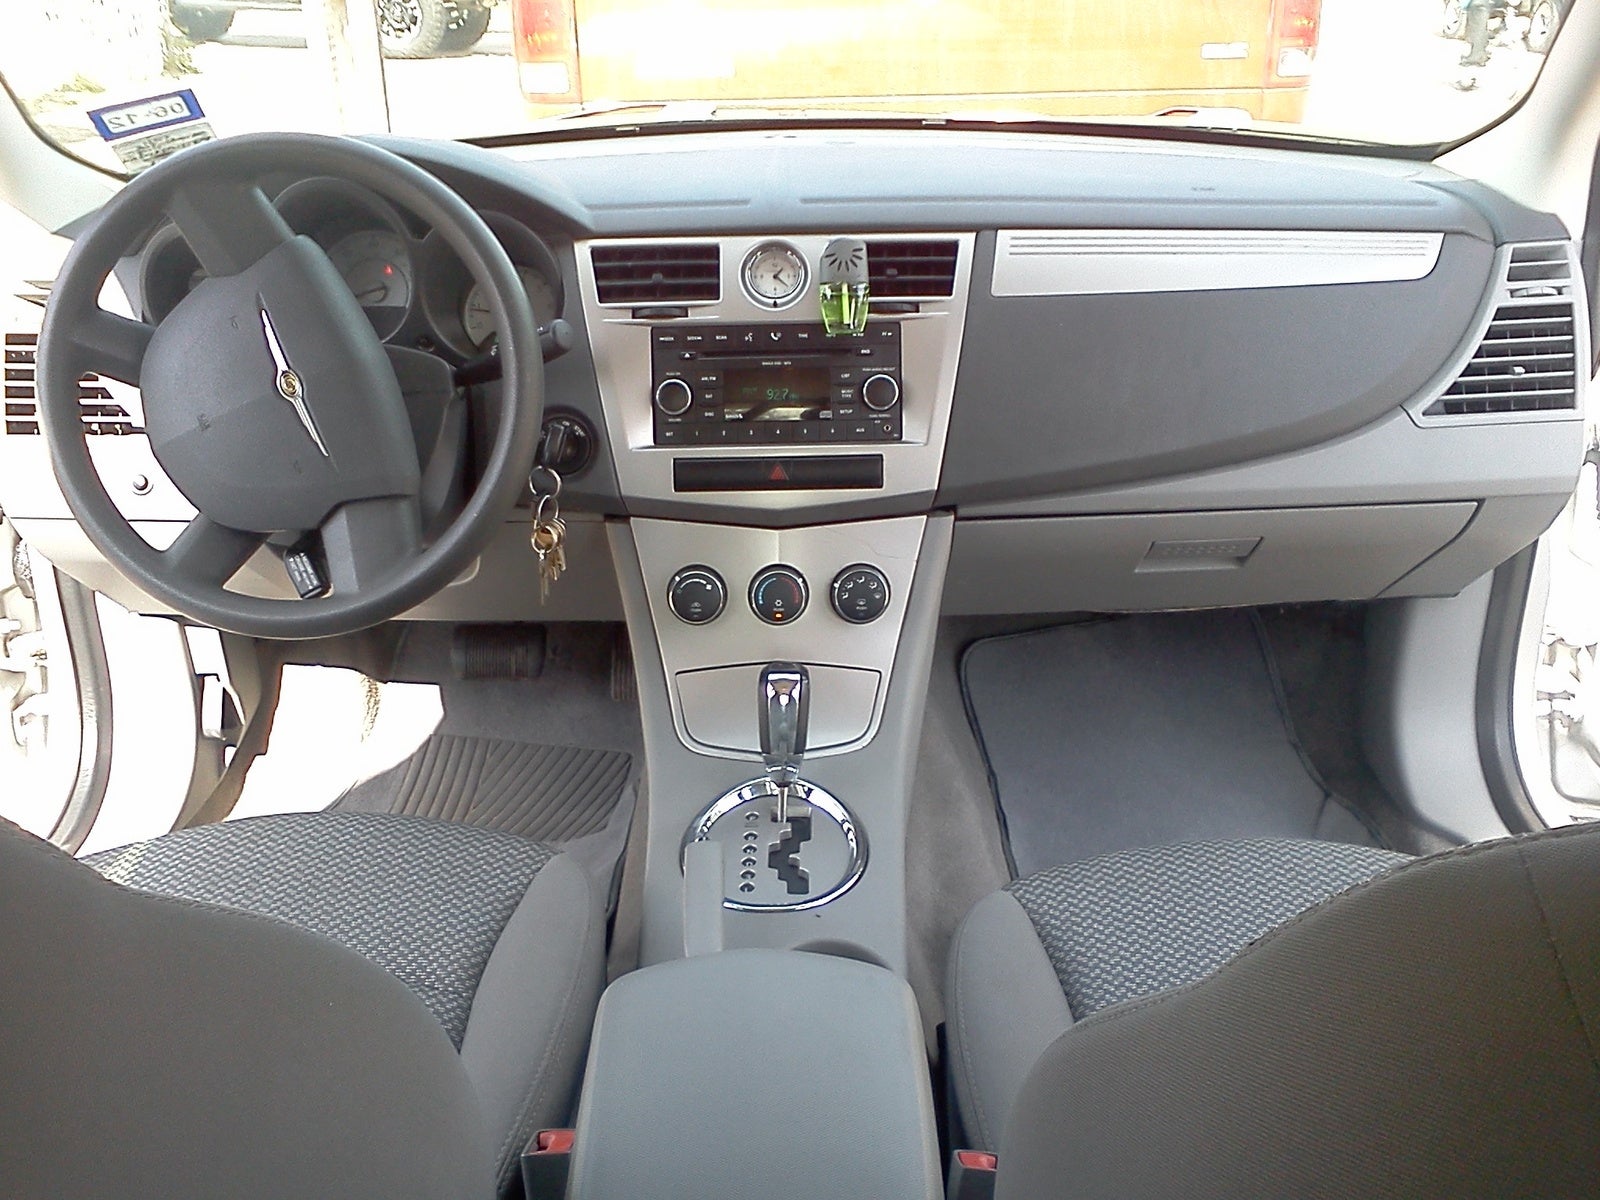 2008 Chrysler sebring interior photos #1